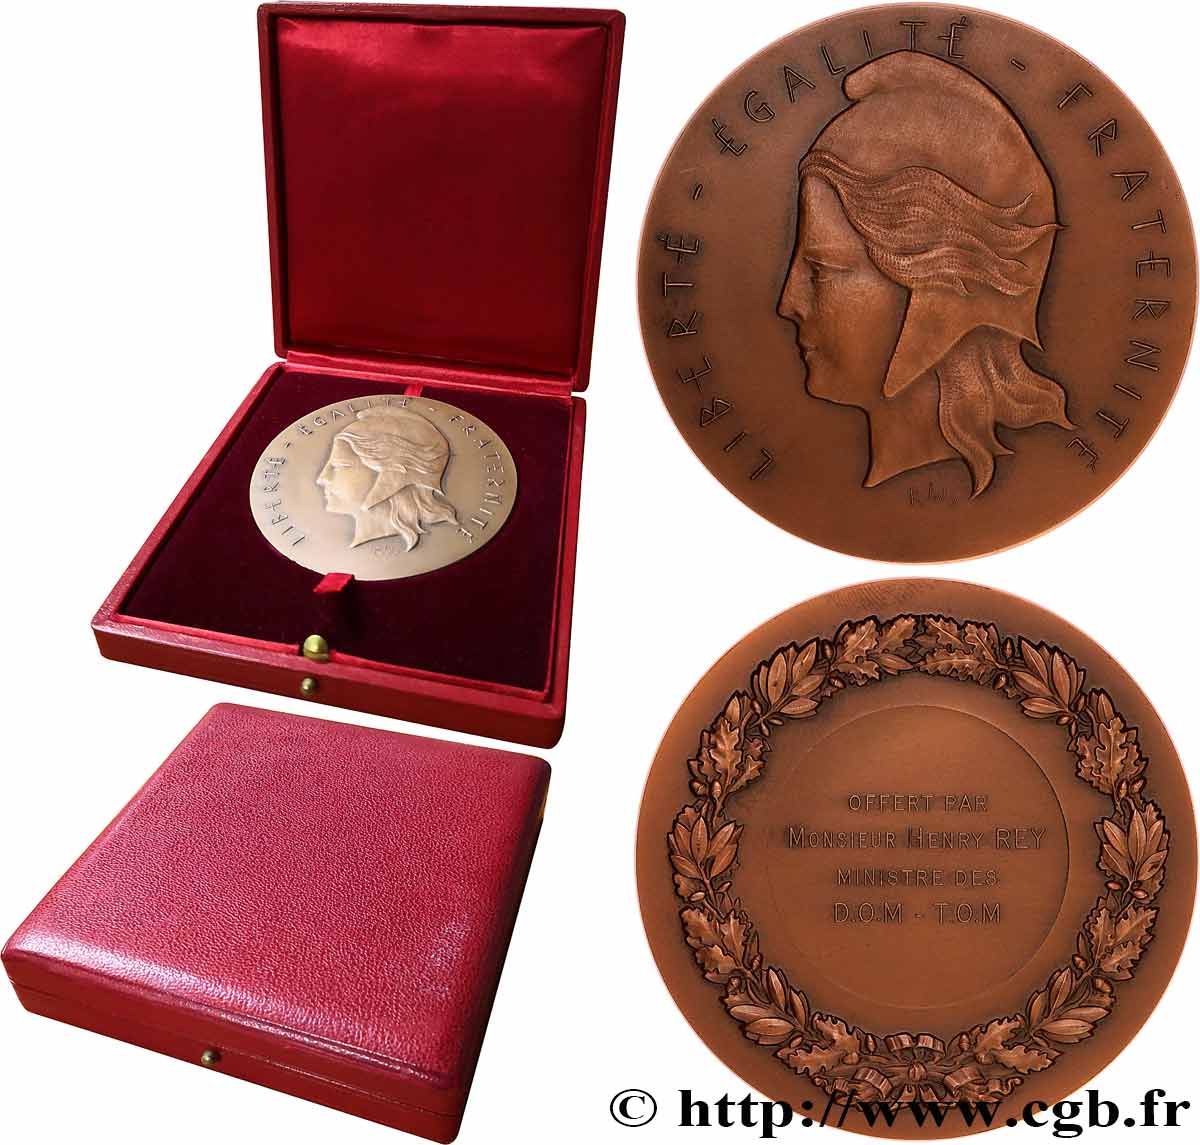 QUINTA REPUBLICA FRANCESA Médaille, offerte par le ministre des D.O.M.-T.O.M. EBC